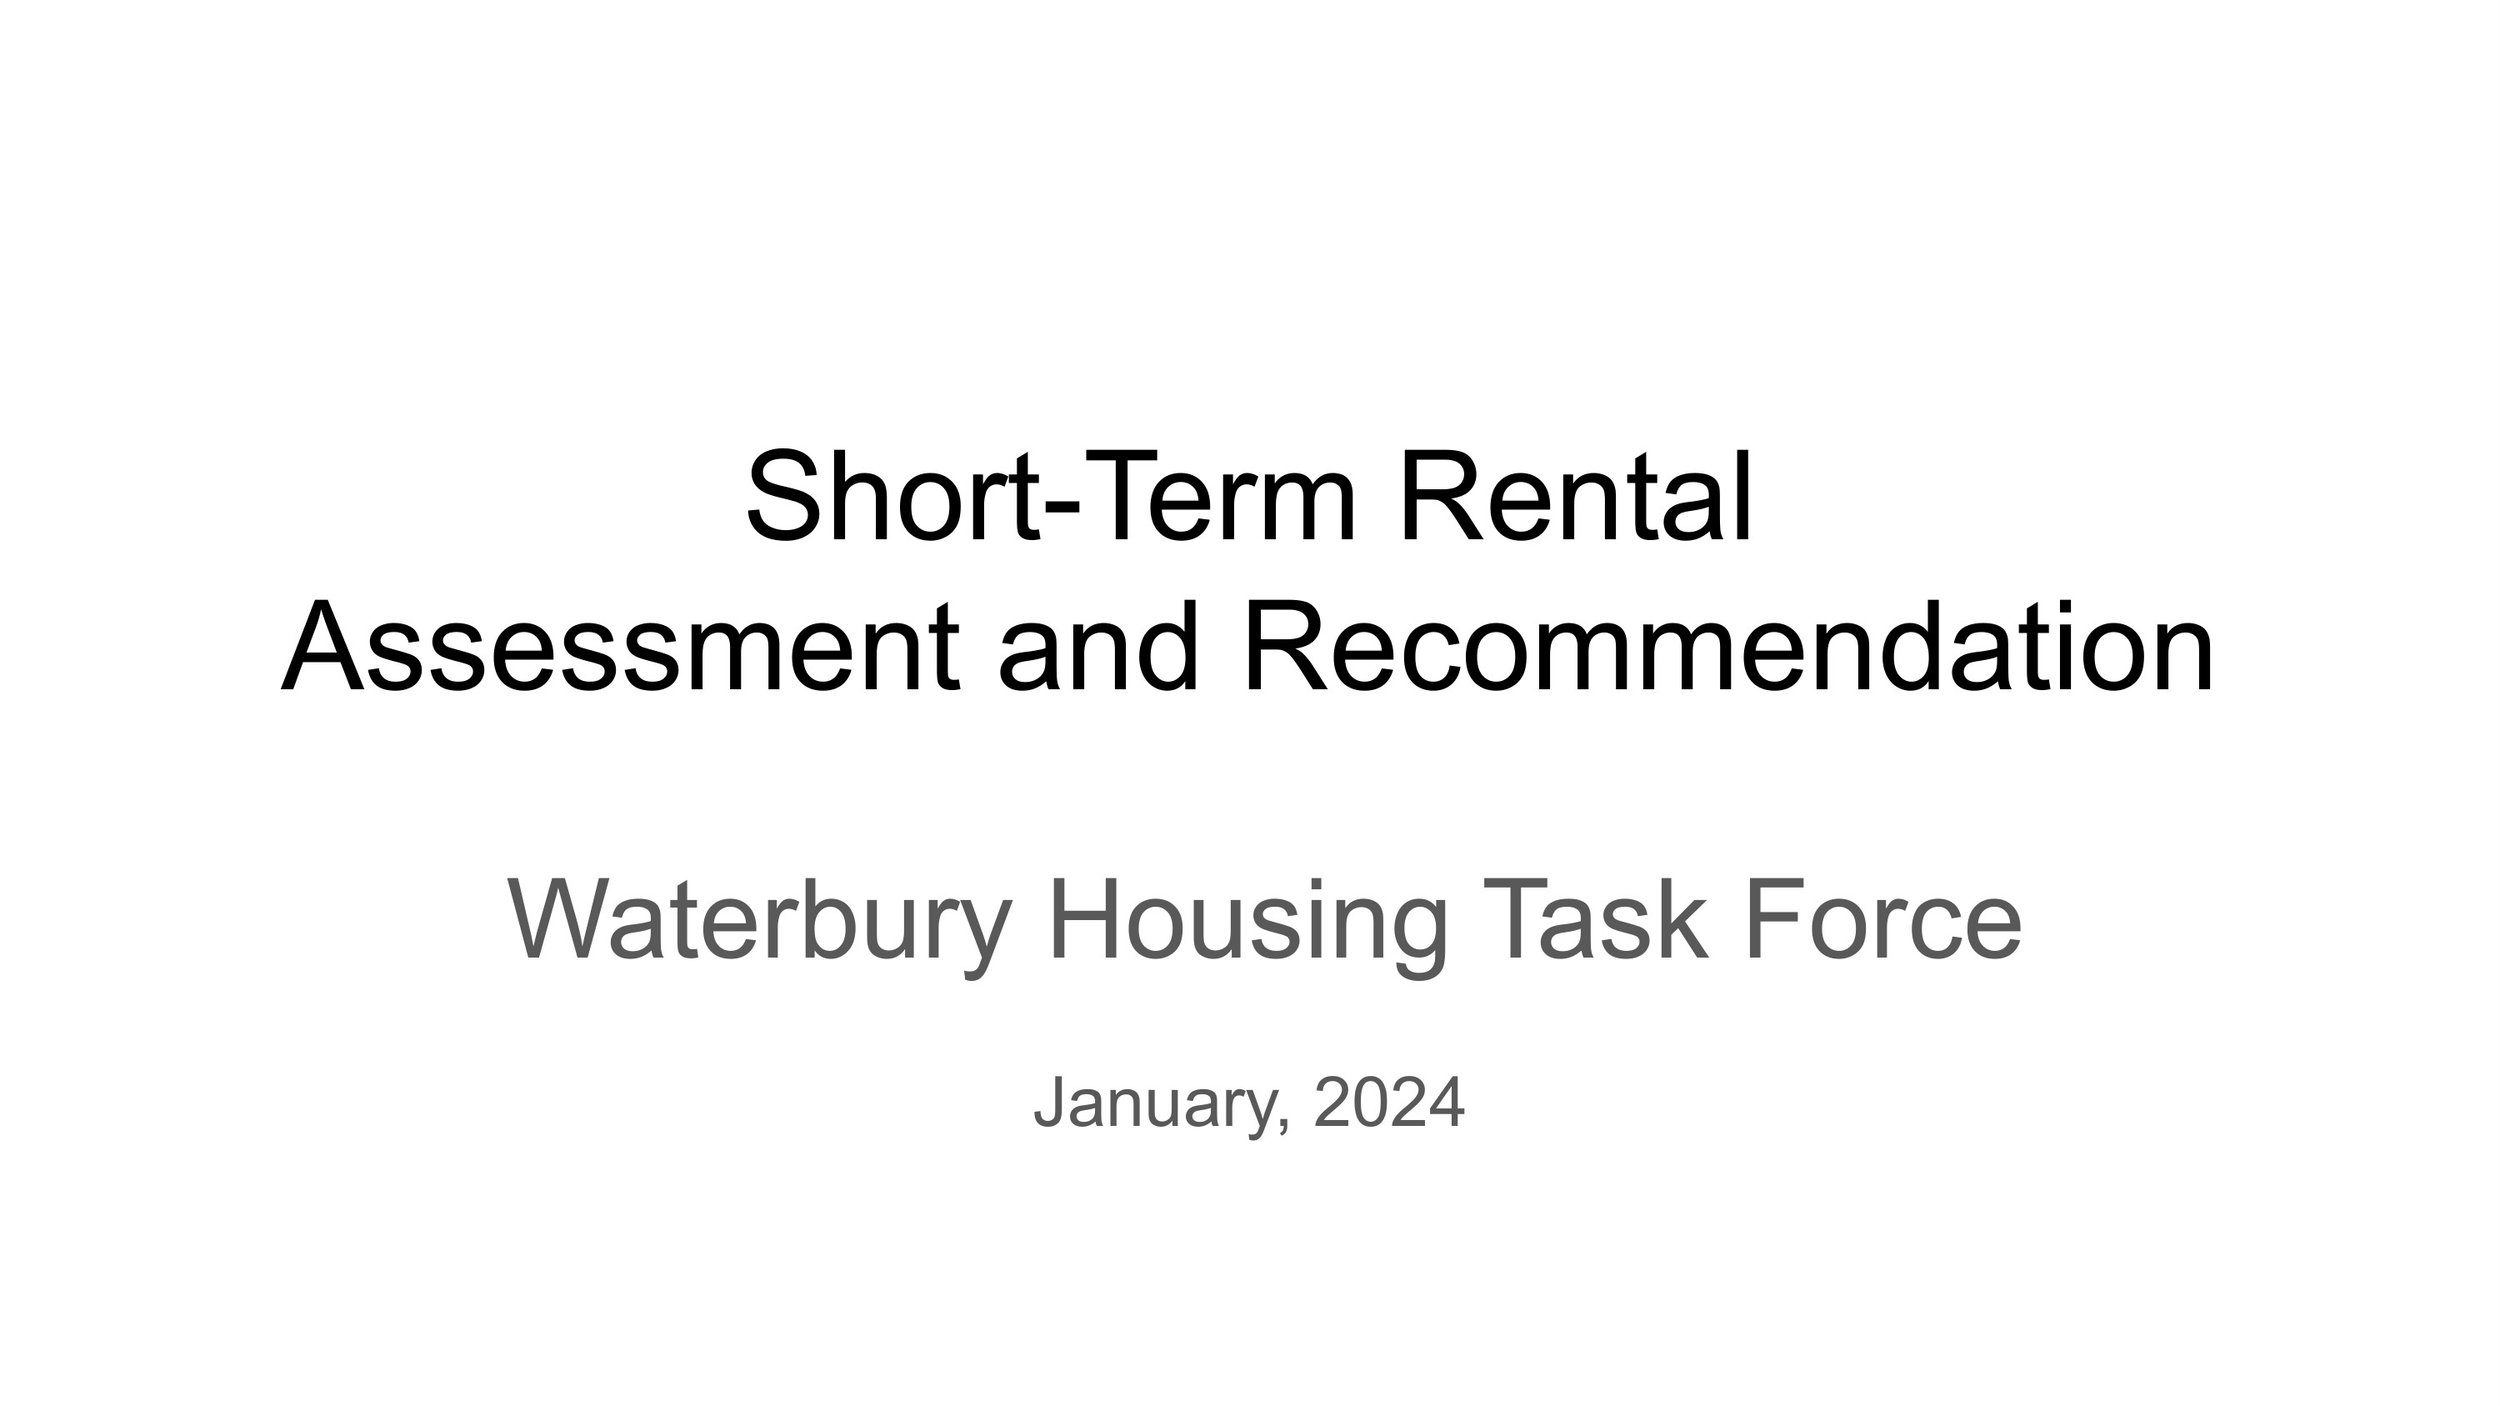 Waterbury Housing Task Force - STR Assessment-2.jpg